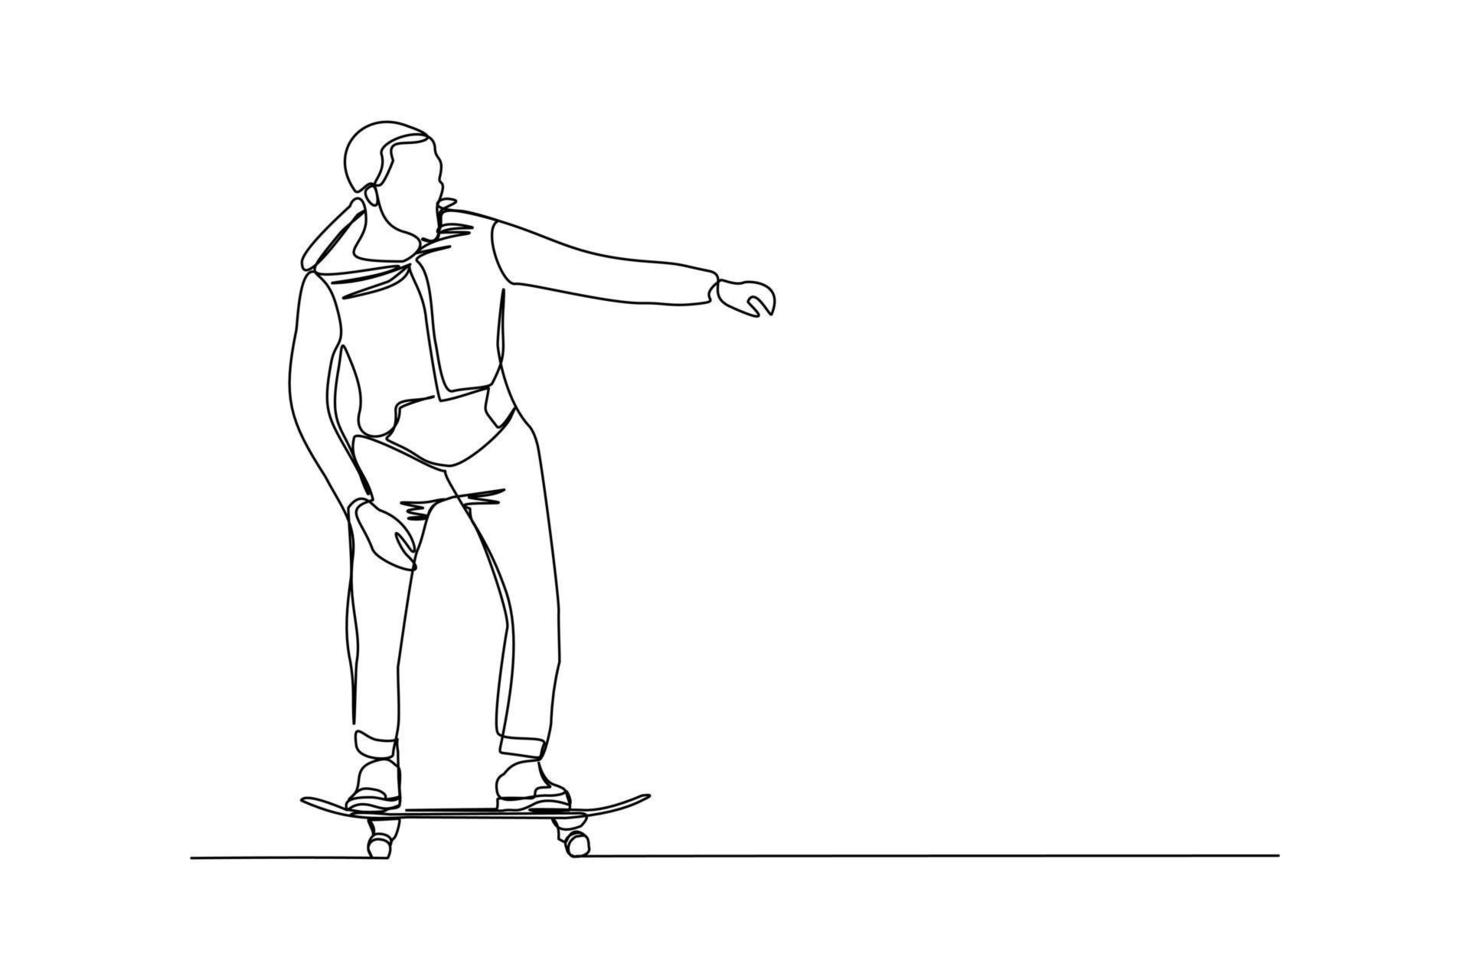 kontinuierliche Linienzeichnung eines jungen Mannes, der Skateboard spielt. einzelnes einzeiliges kunstsport-vektorillustrationsthema. Person spielen Spiel für Übung und Hobby isoliert auf weißem Hintergrund vektor